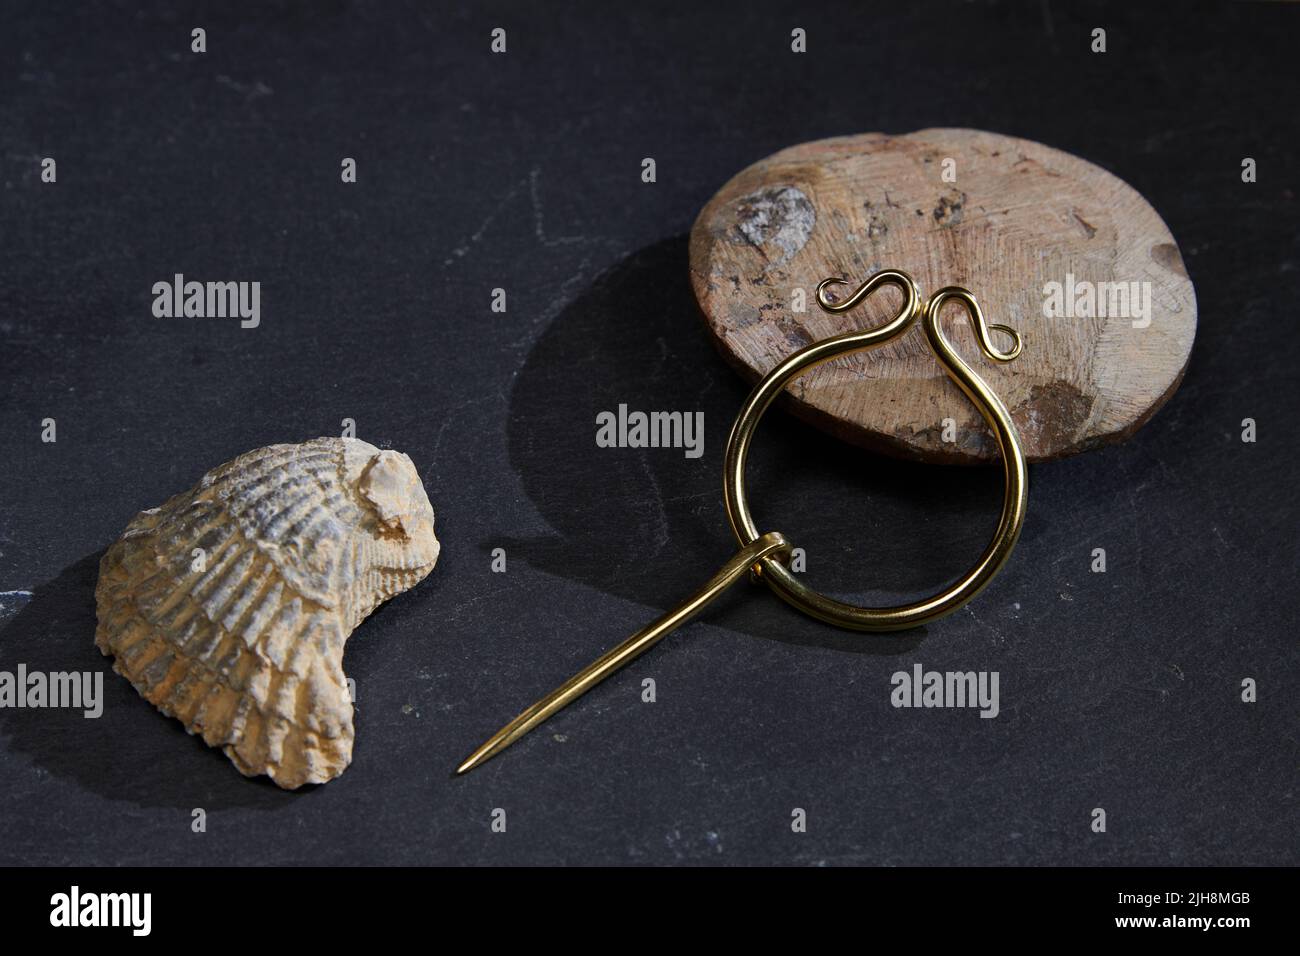 Les beaux bracelets dorés de l'époque romaine avec des motifs sur une surface noire avec ombre et un seashell Banque D'Images